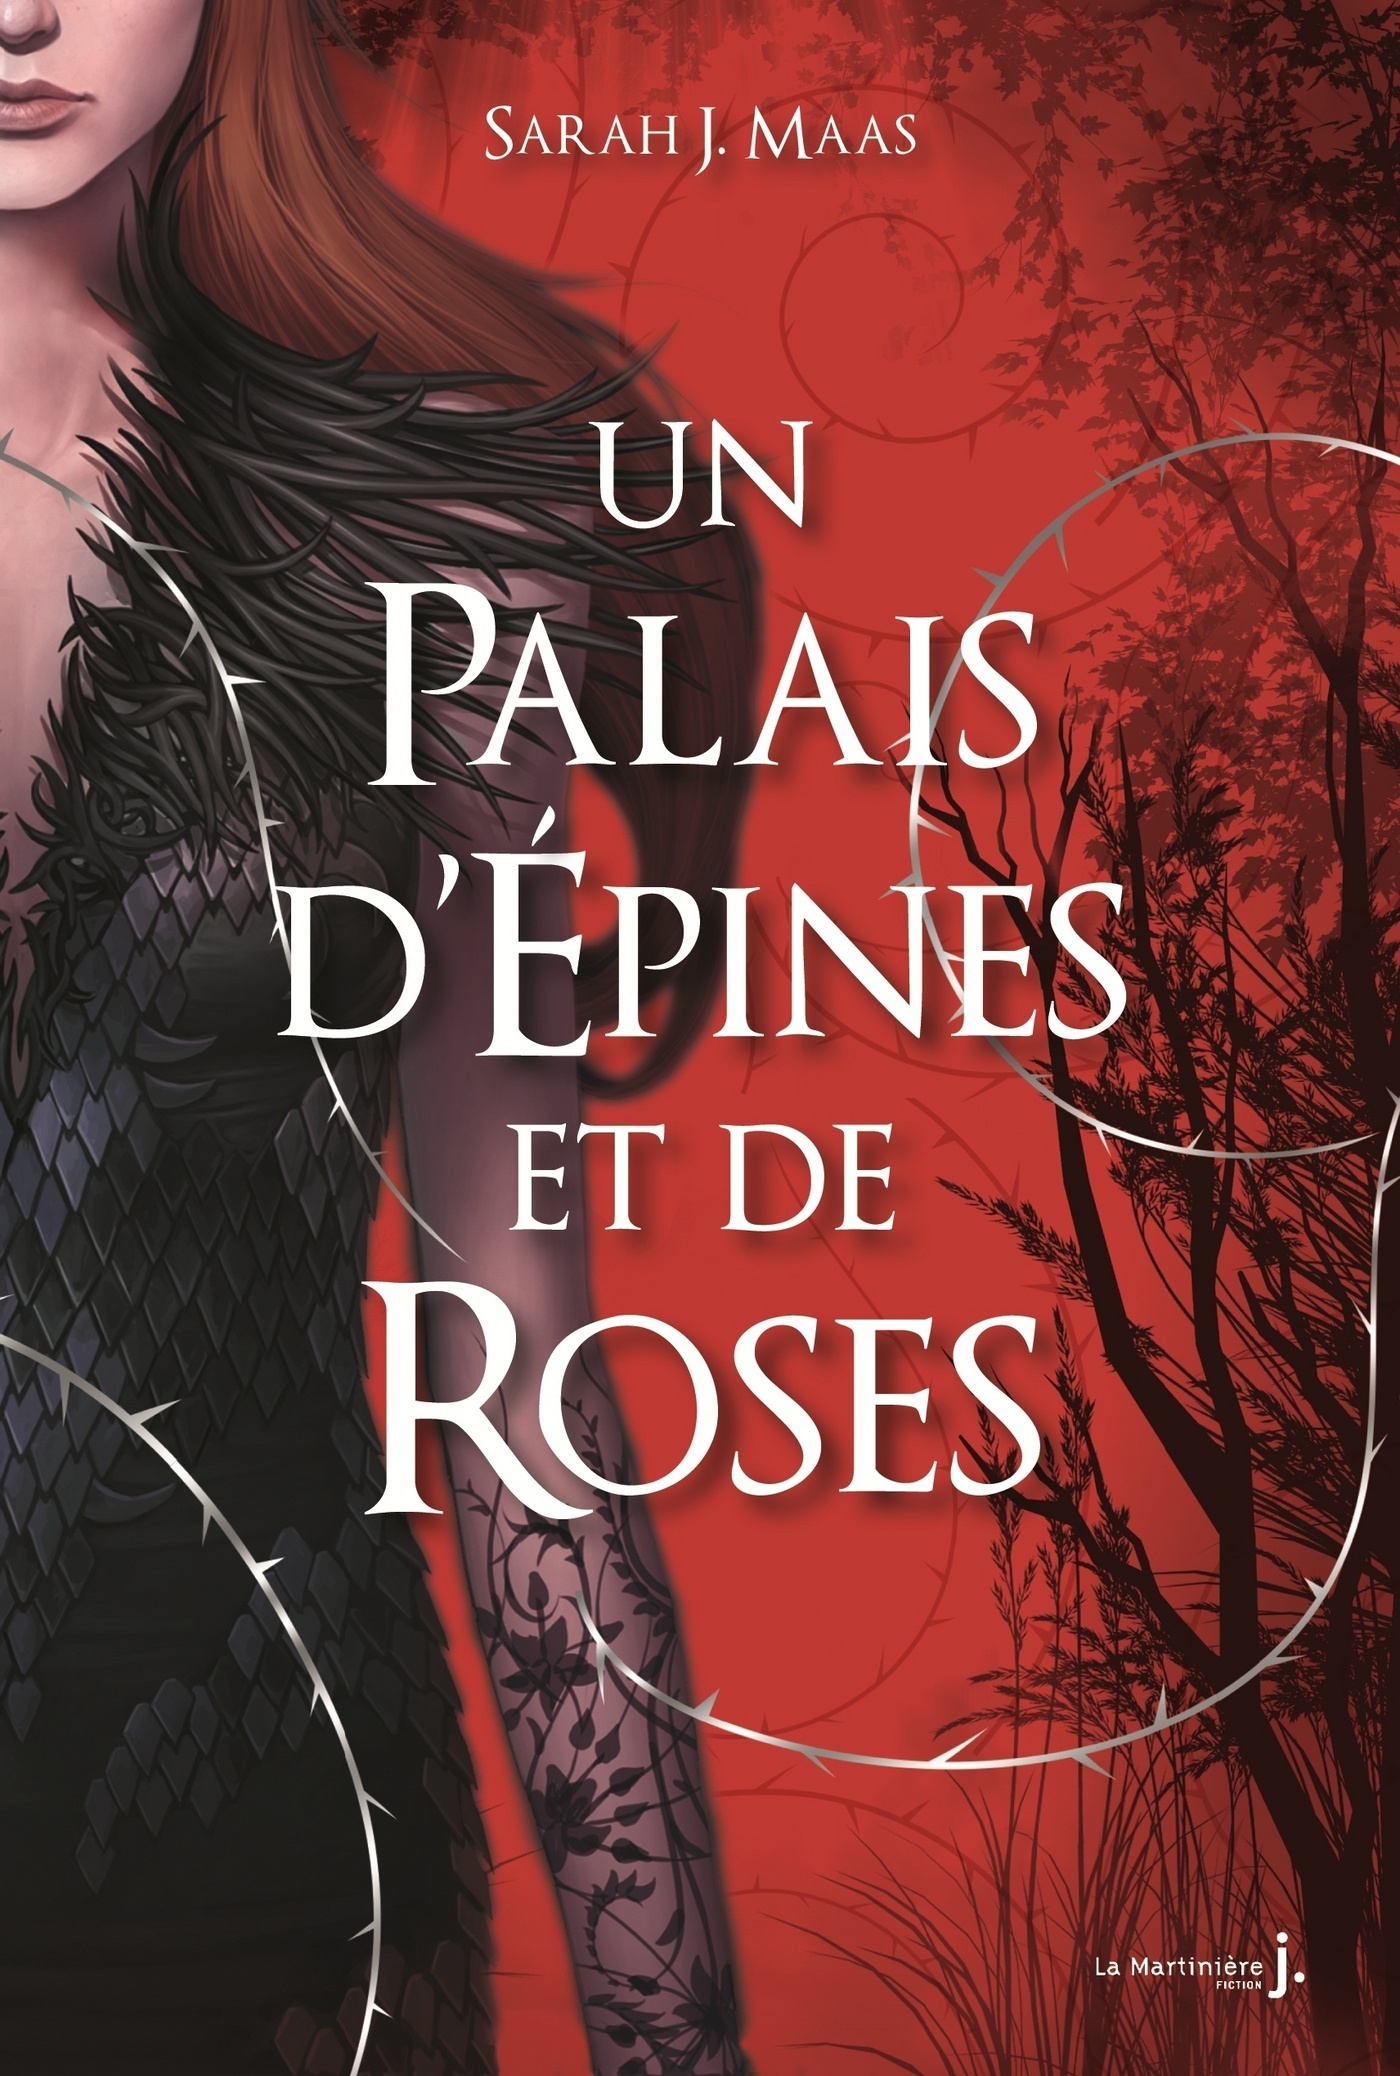 Tag faë sur Entre 2 livres Un-palais-d-epines-et-de-roses-1406059